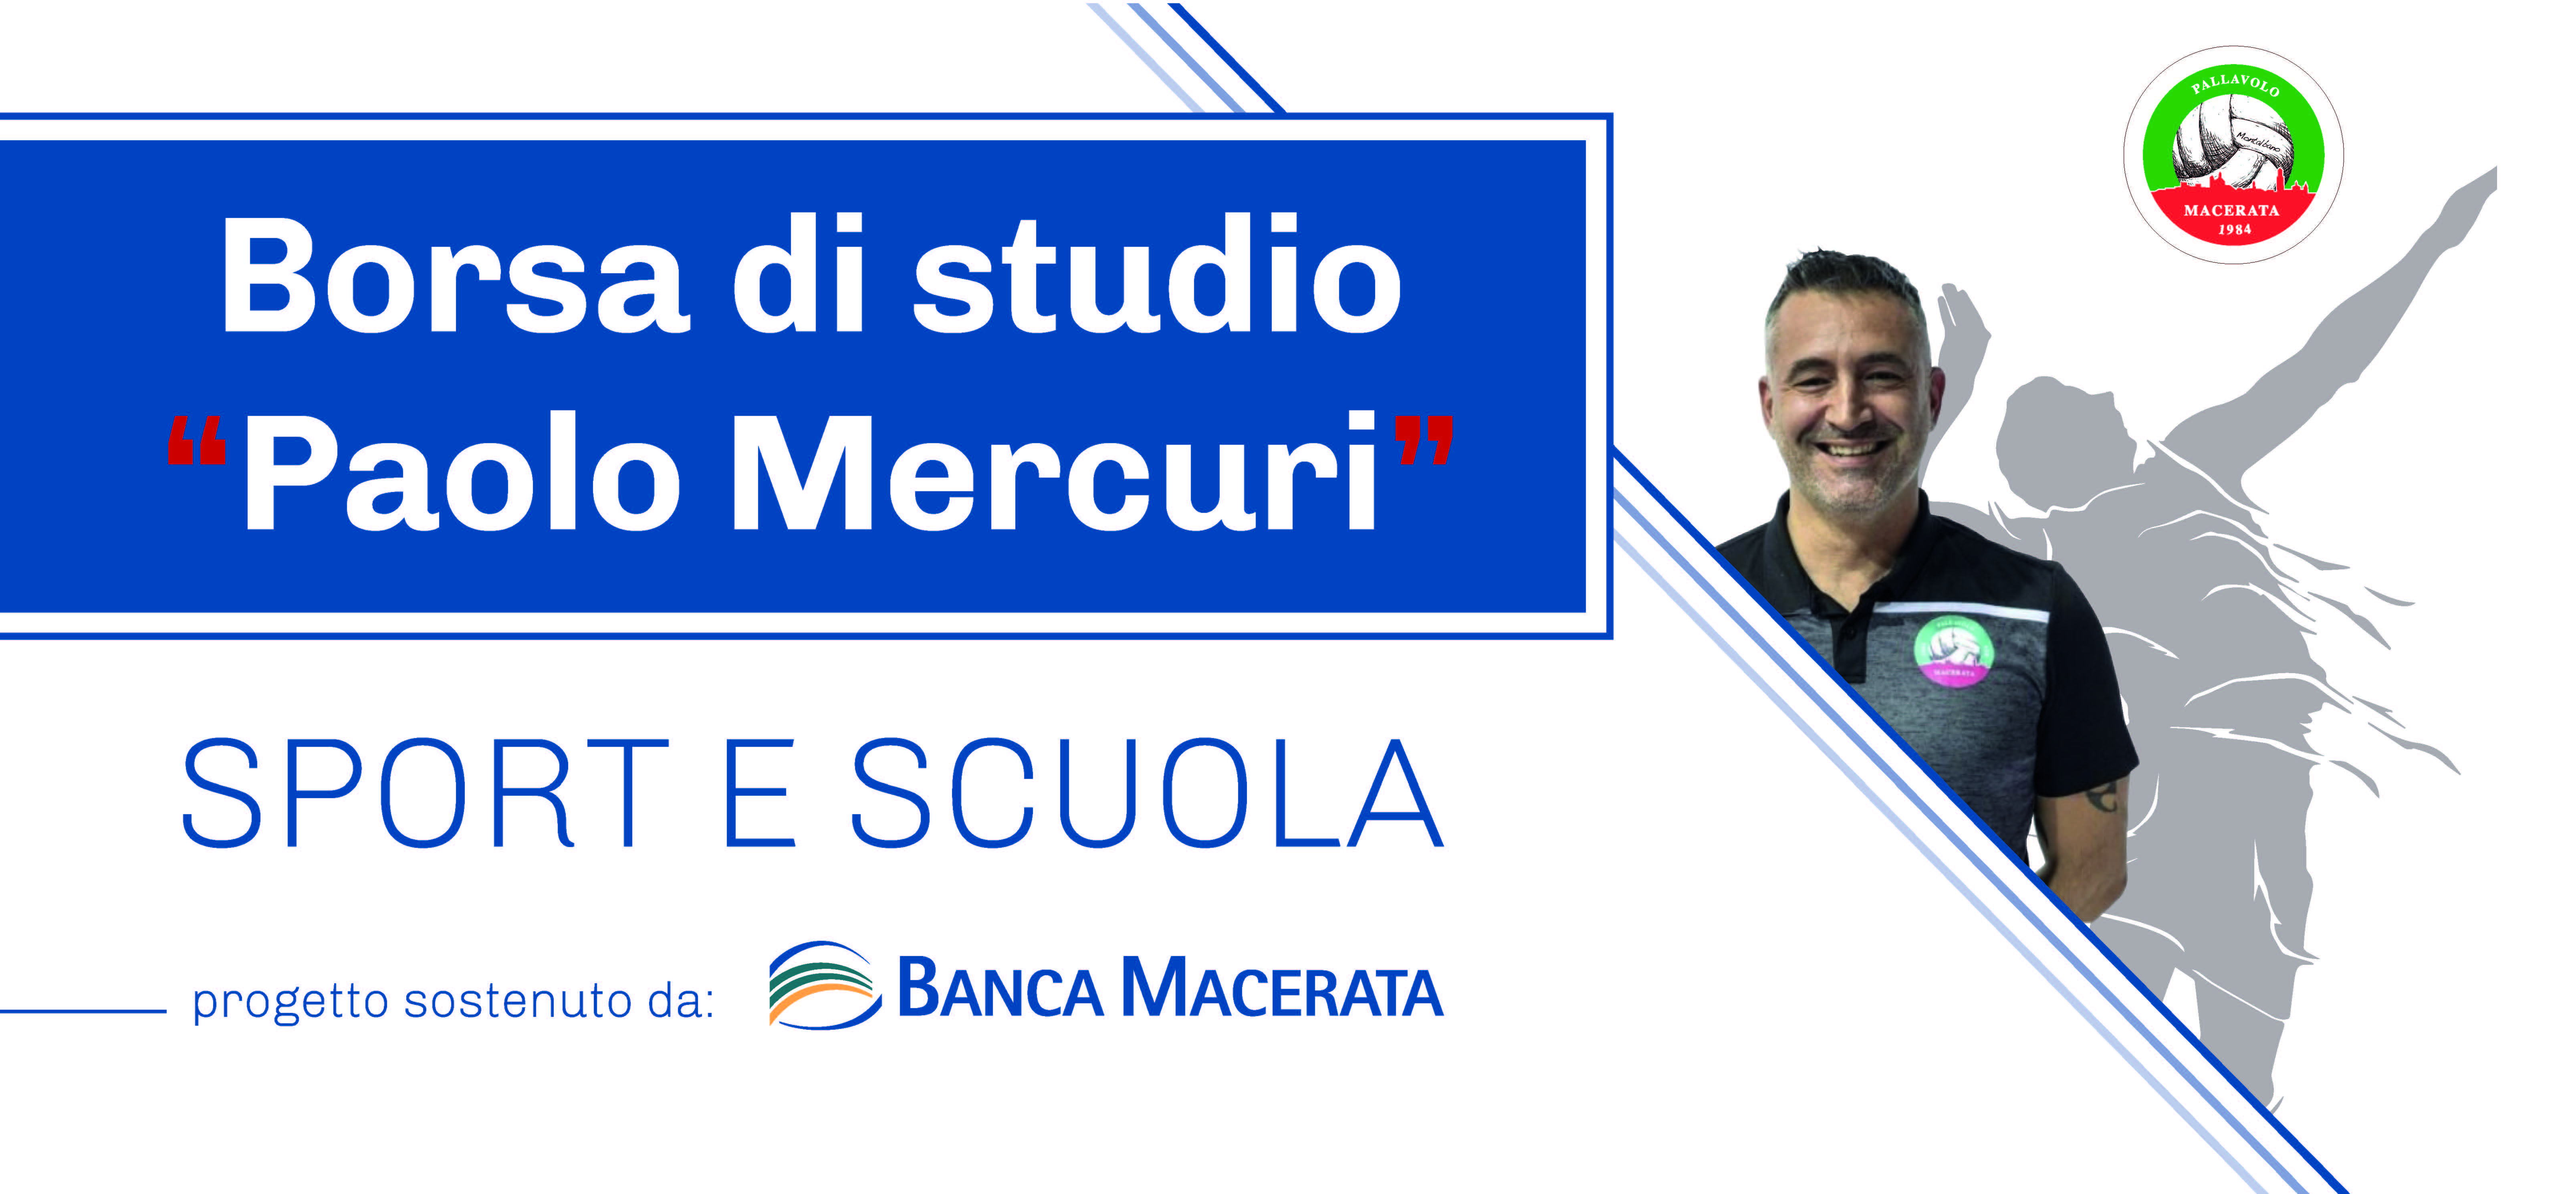 Insieme alla Pallavolo Macerata per la seconda edizione della Borsa di studio “Paolo Mercuri” | Banca Macerata 1